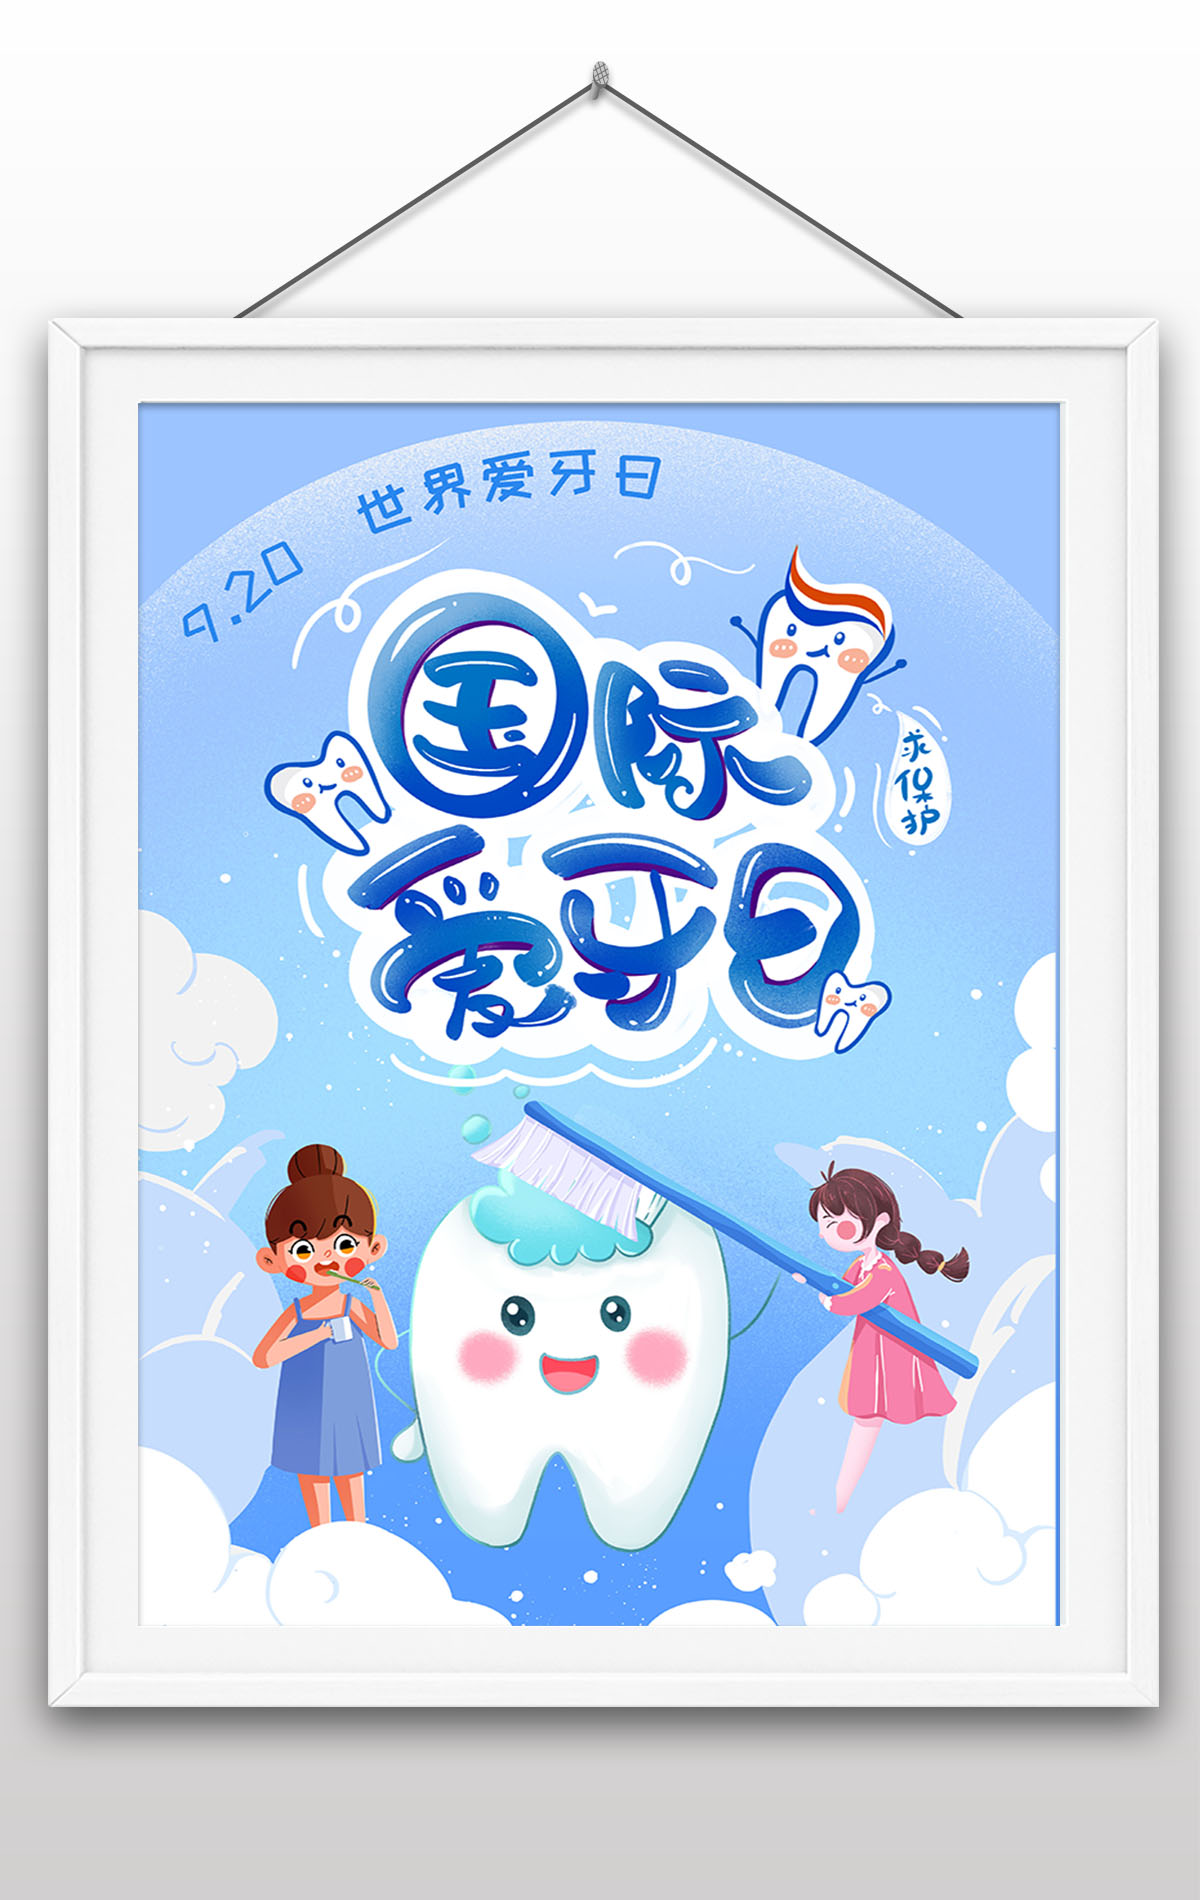 9月20日国际爱牙日爱护口腔健康保护牙齿宣传海报设计